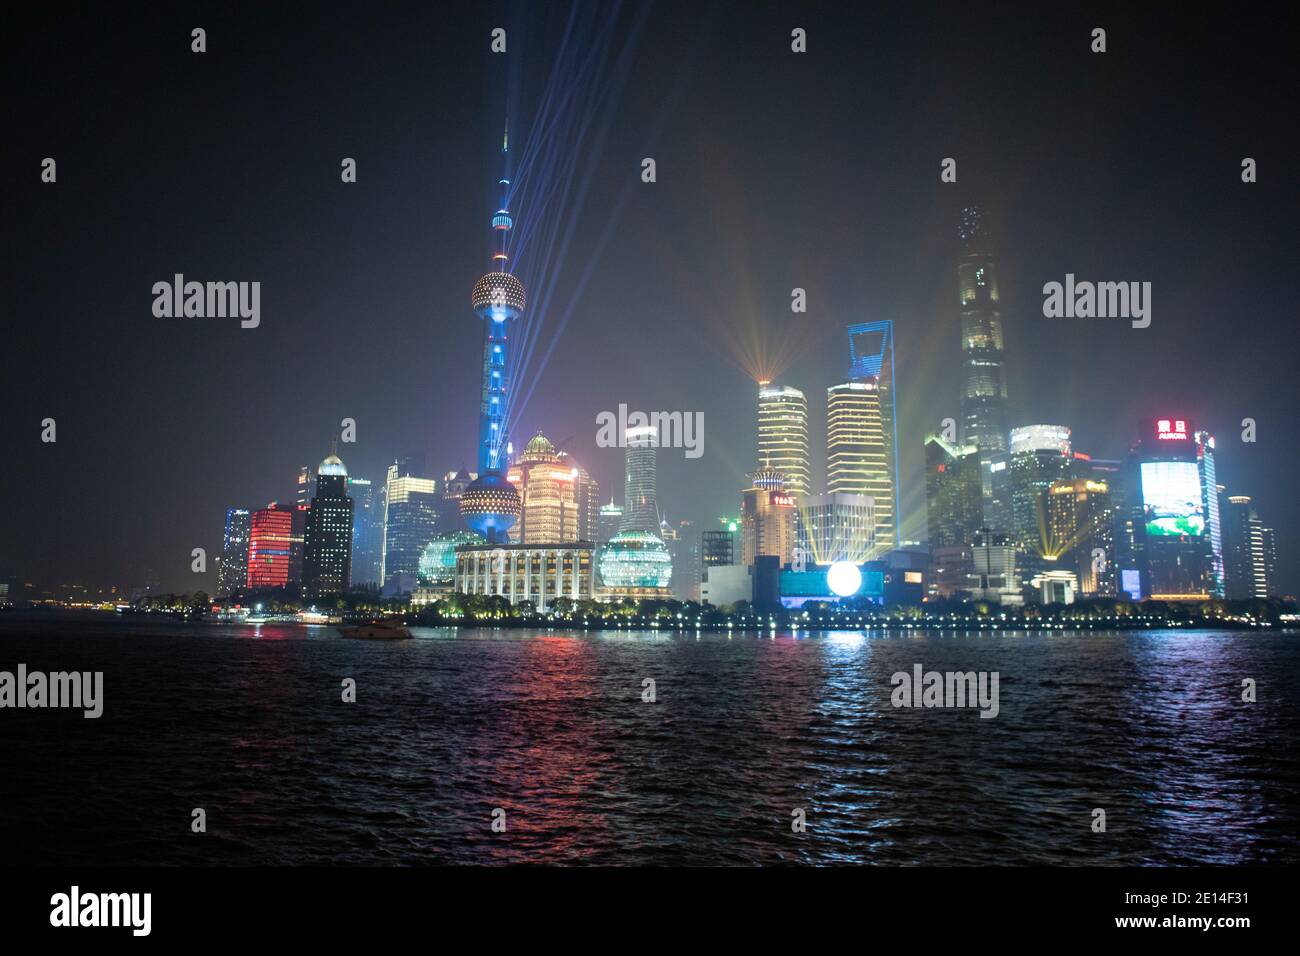 Shanghai, CHINE, scènes nocturnes du Bund, paysages urbains sur la rivière Huangpu, tours architecture moderne immeubles de bureaux Skyline, lumières Banque D'Images